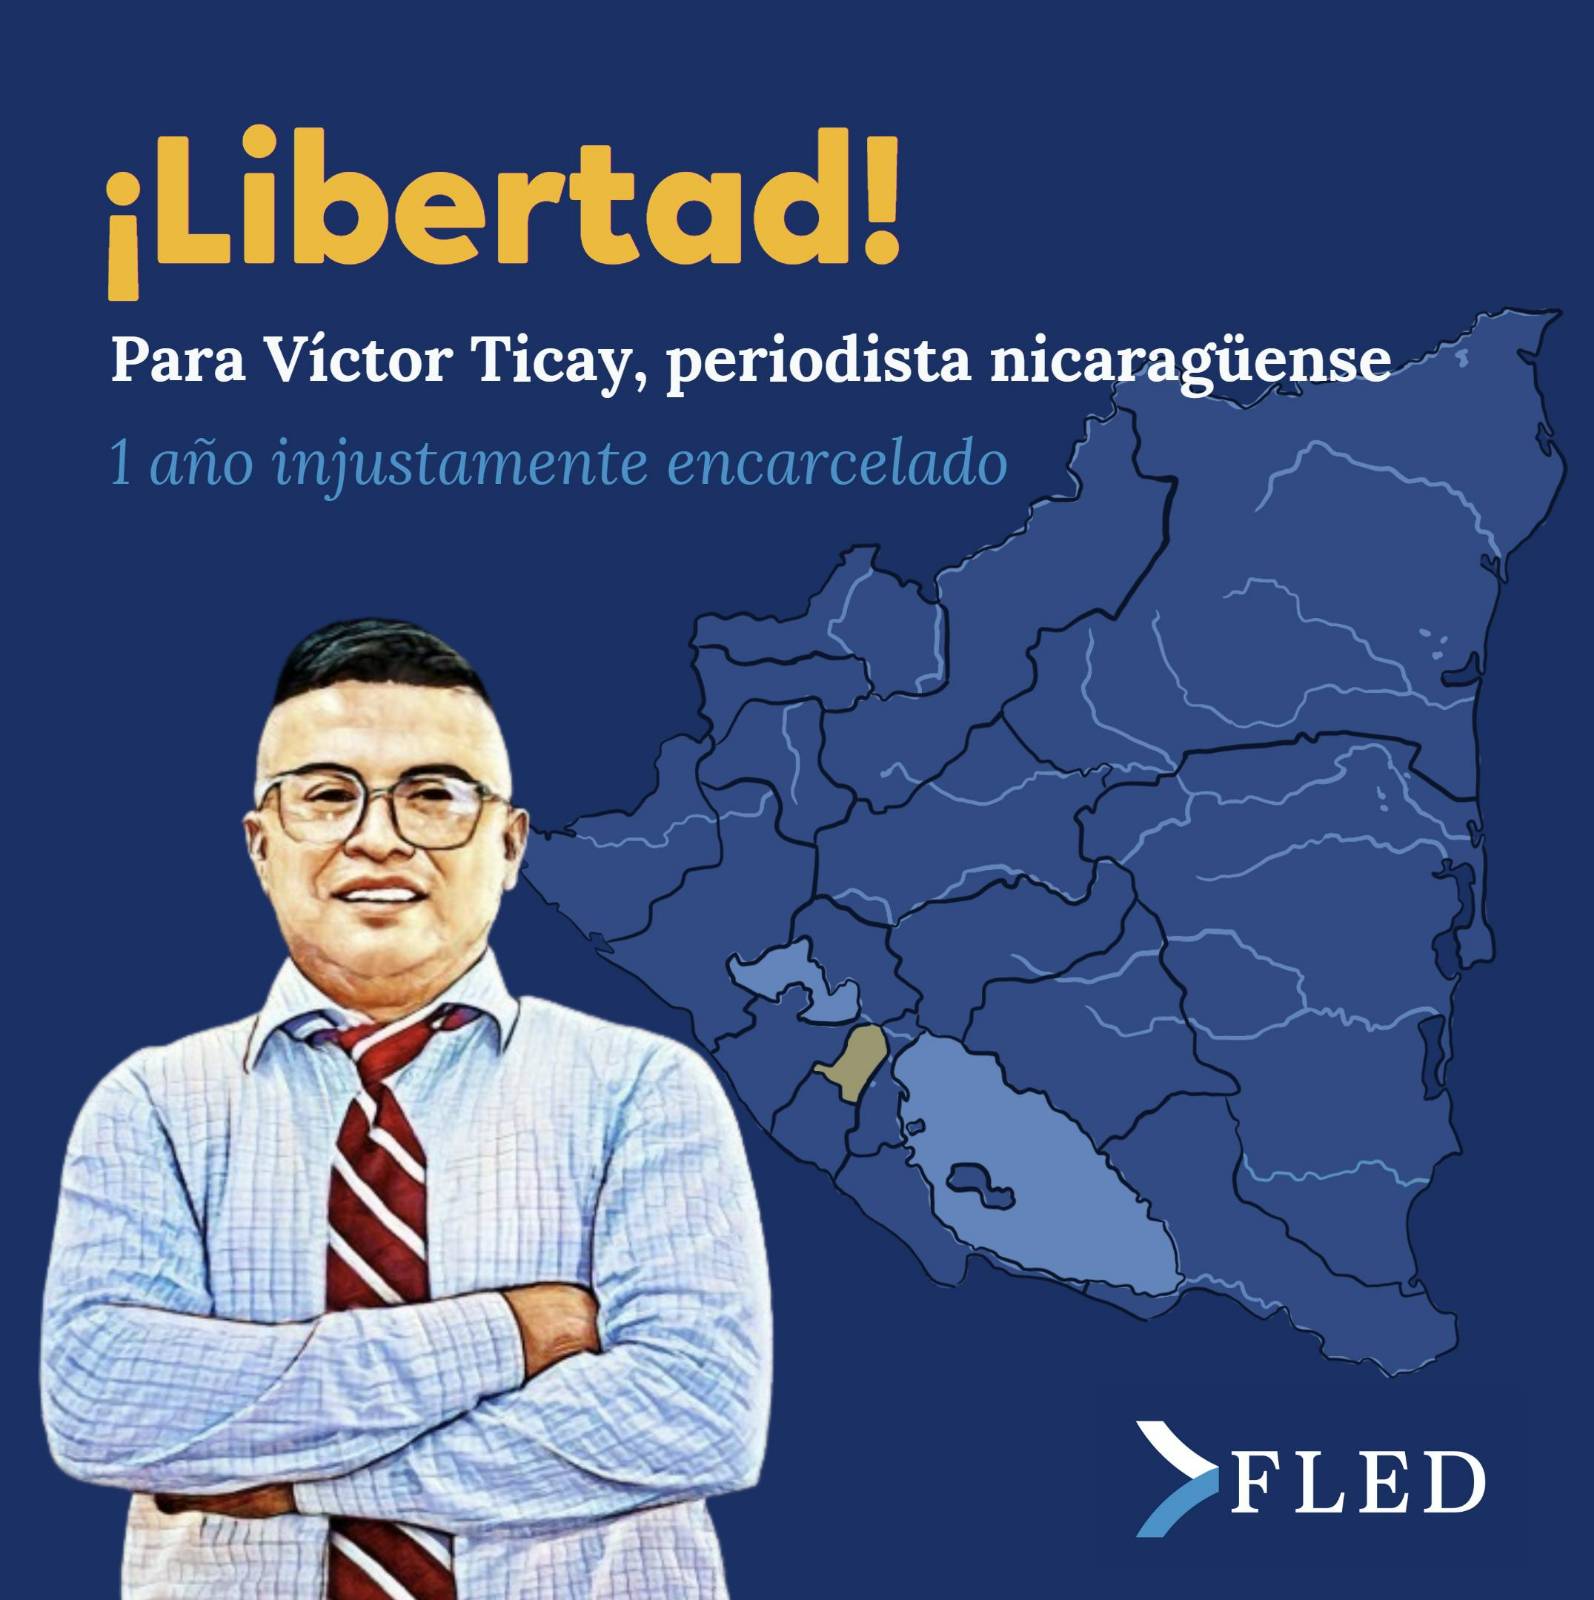 Victor Ticay encarcelado hace un año injustamente